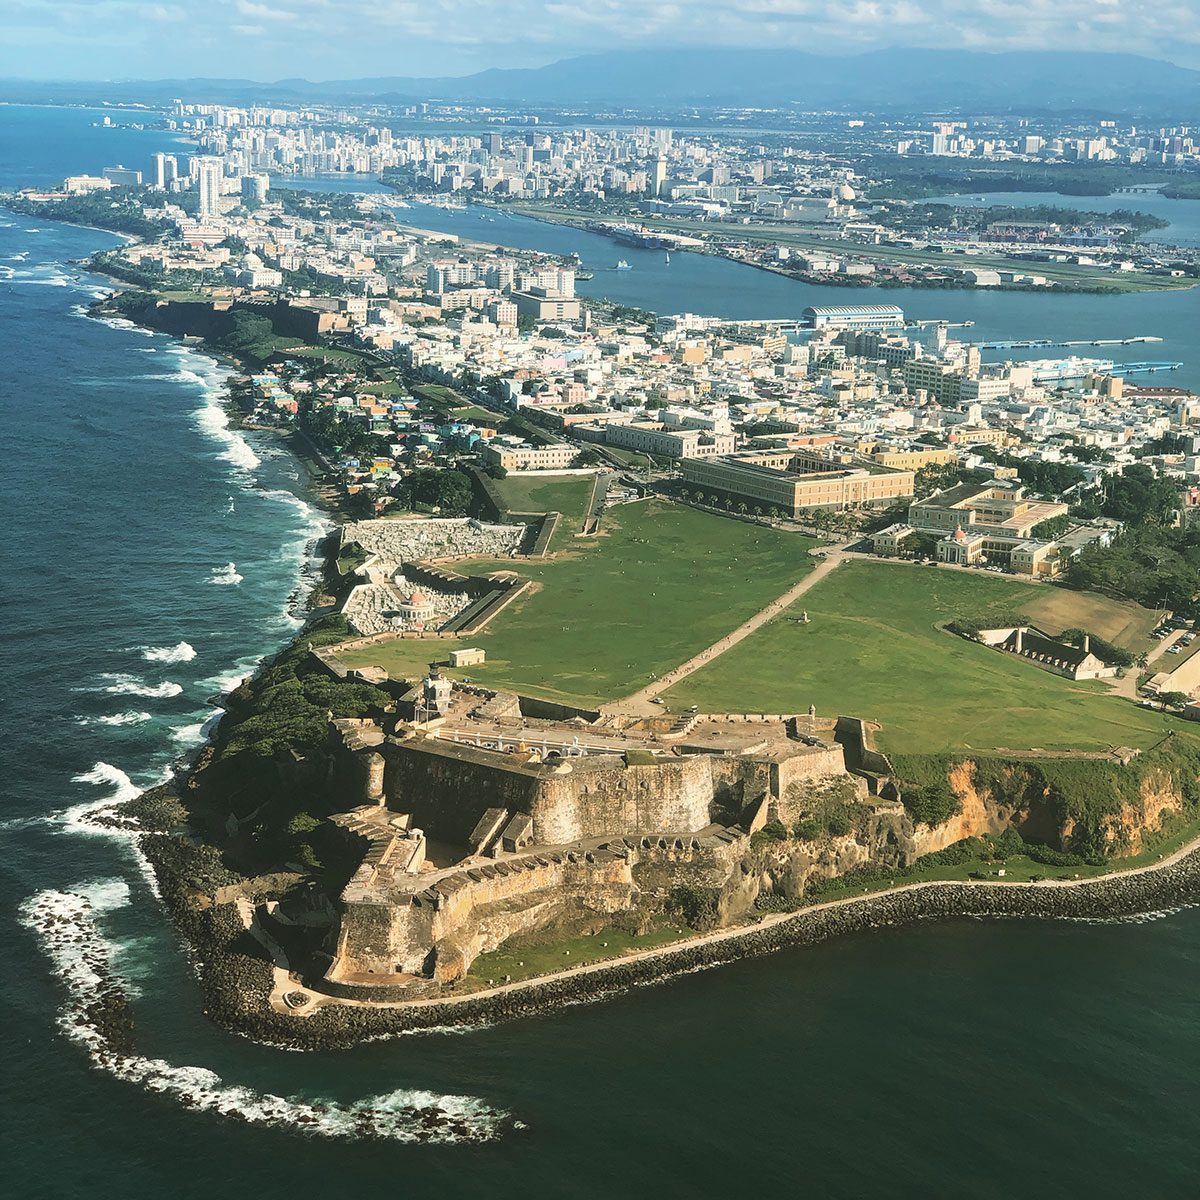 Aerial view of San Juan, Puerto Rico